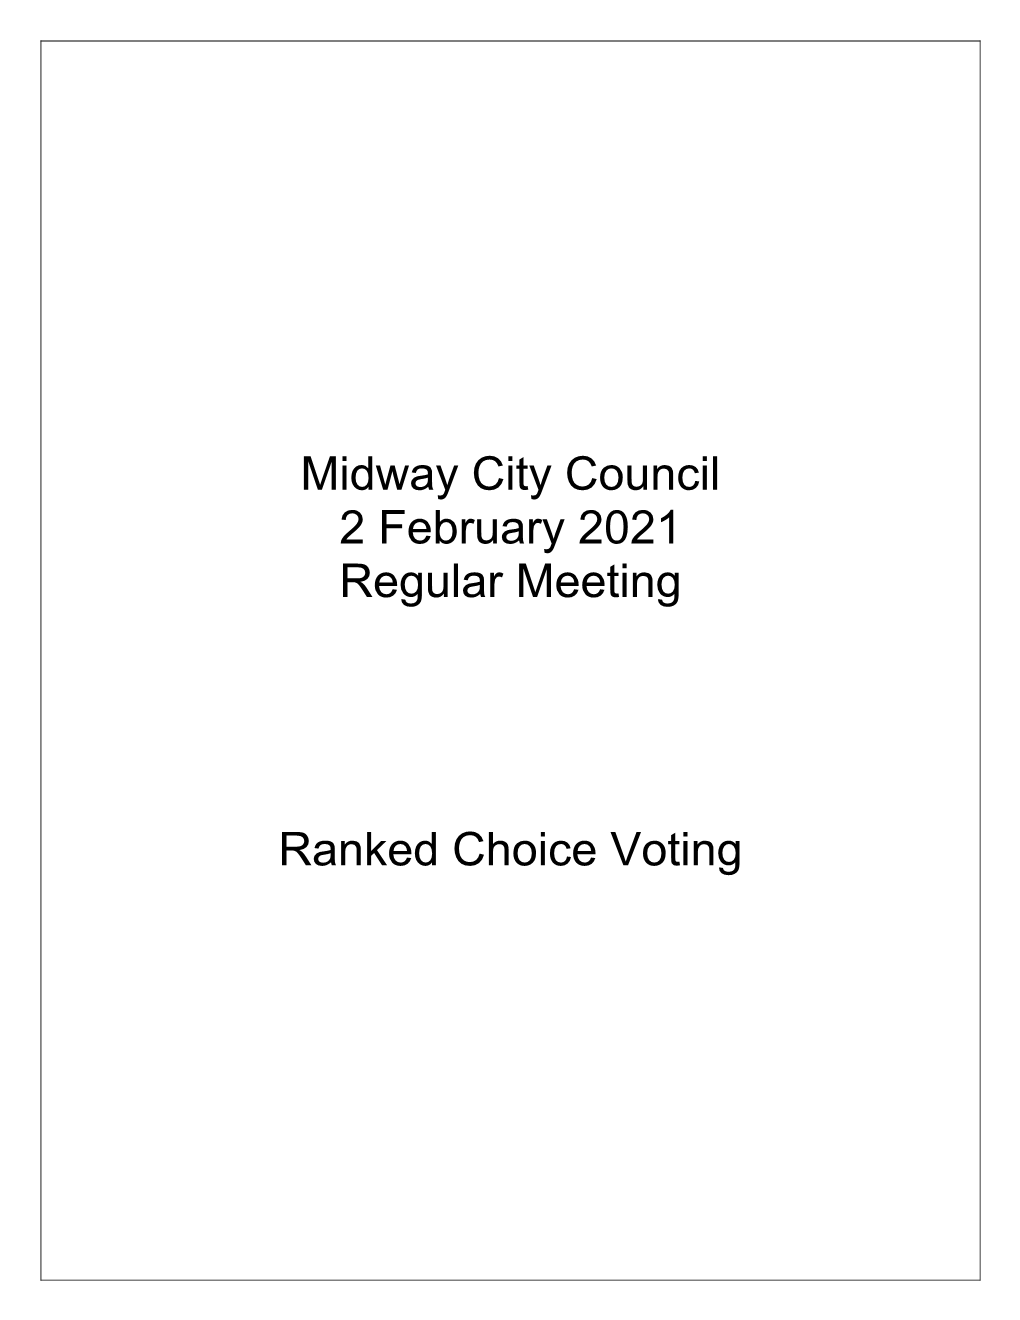 Ranked Choice Voting 1/28/2021 Ranked-Choice Voting (RCV) - Ballotpedia